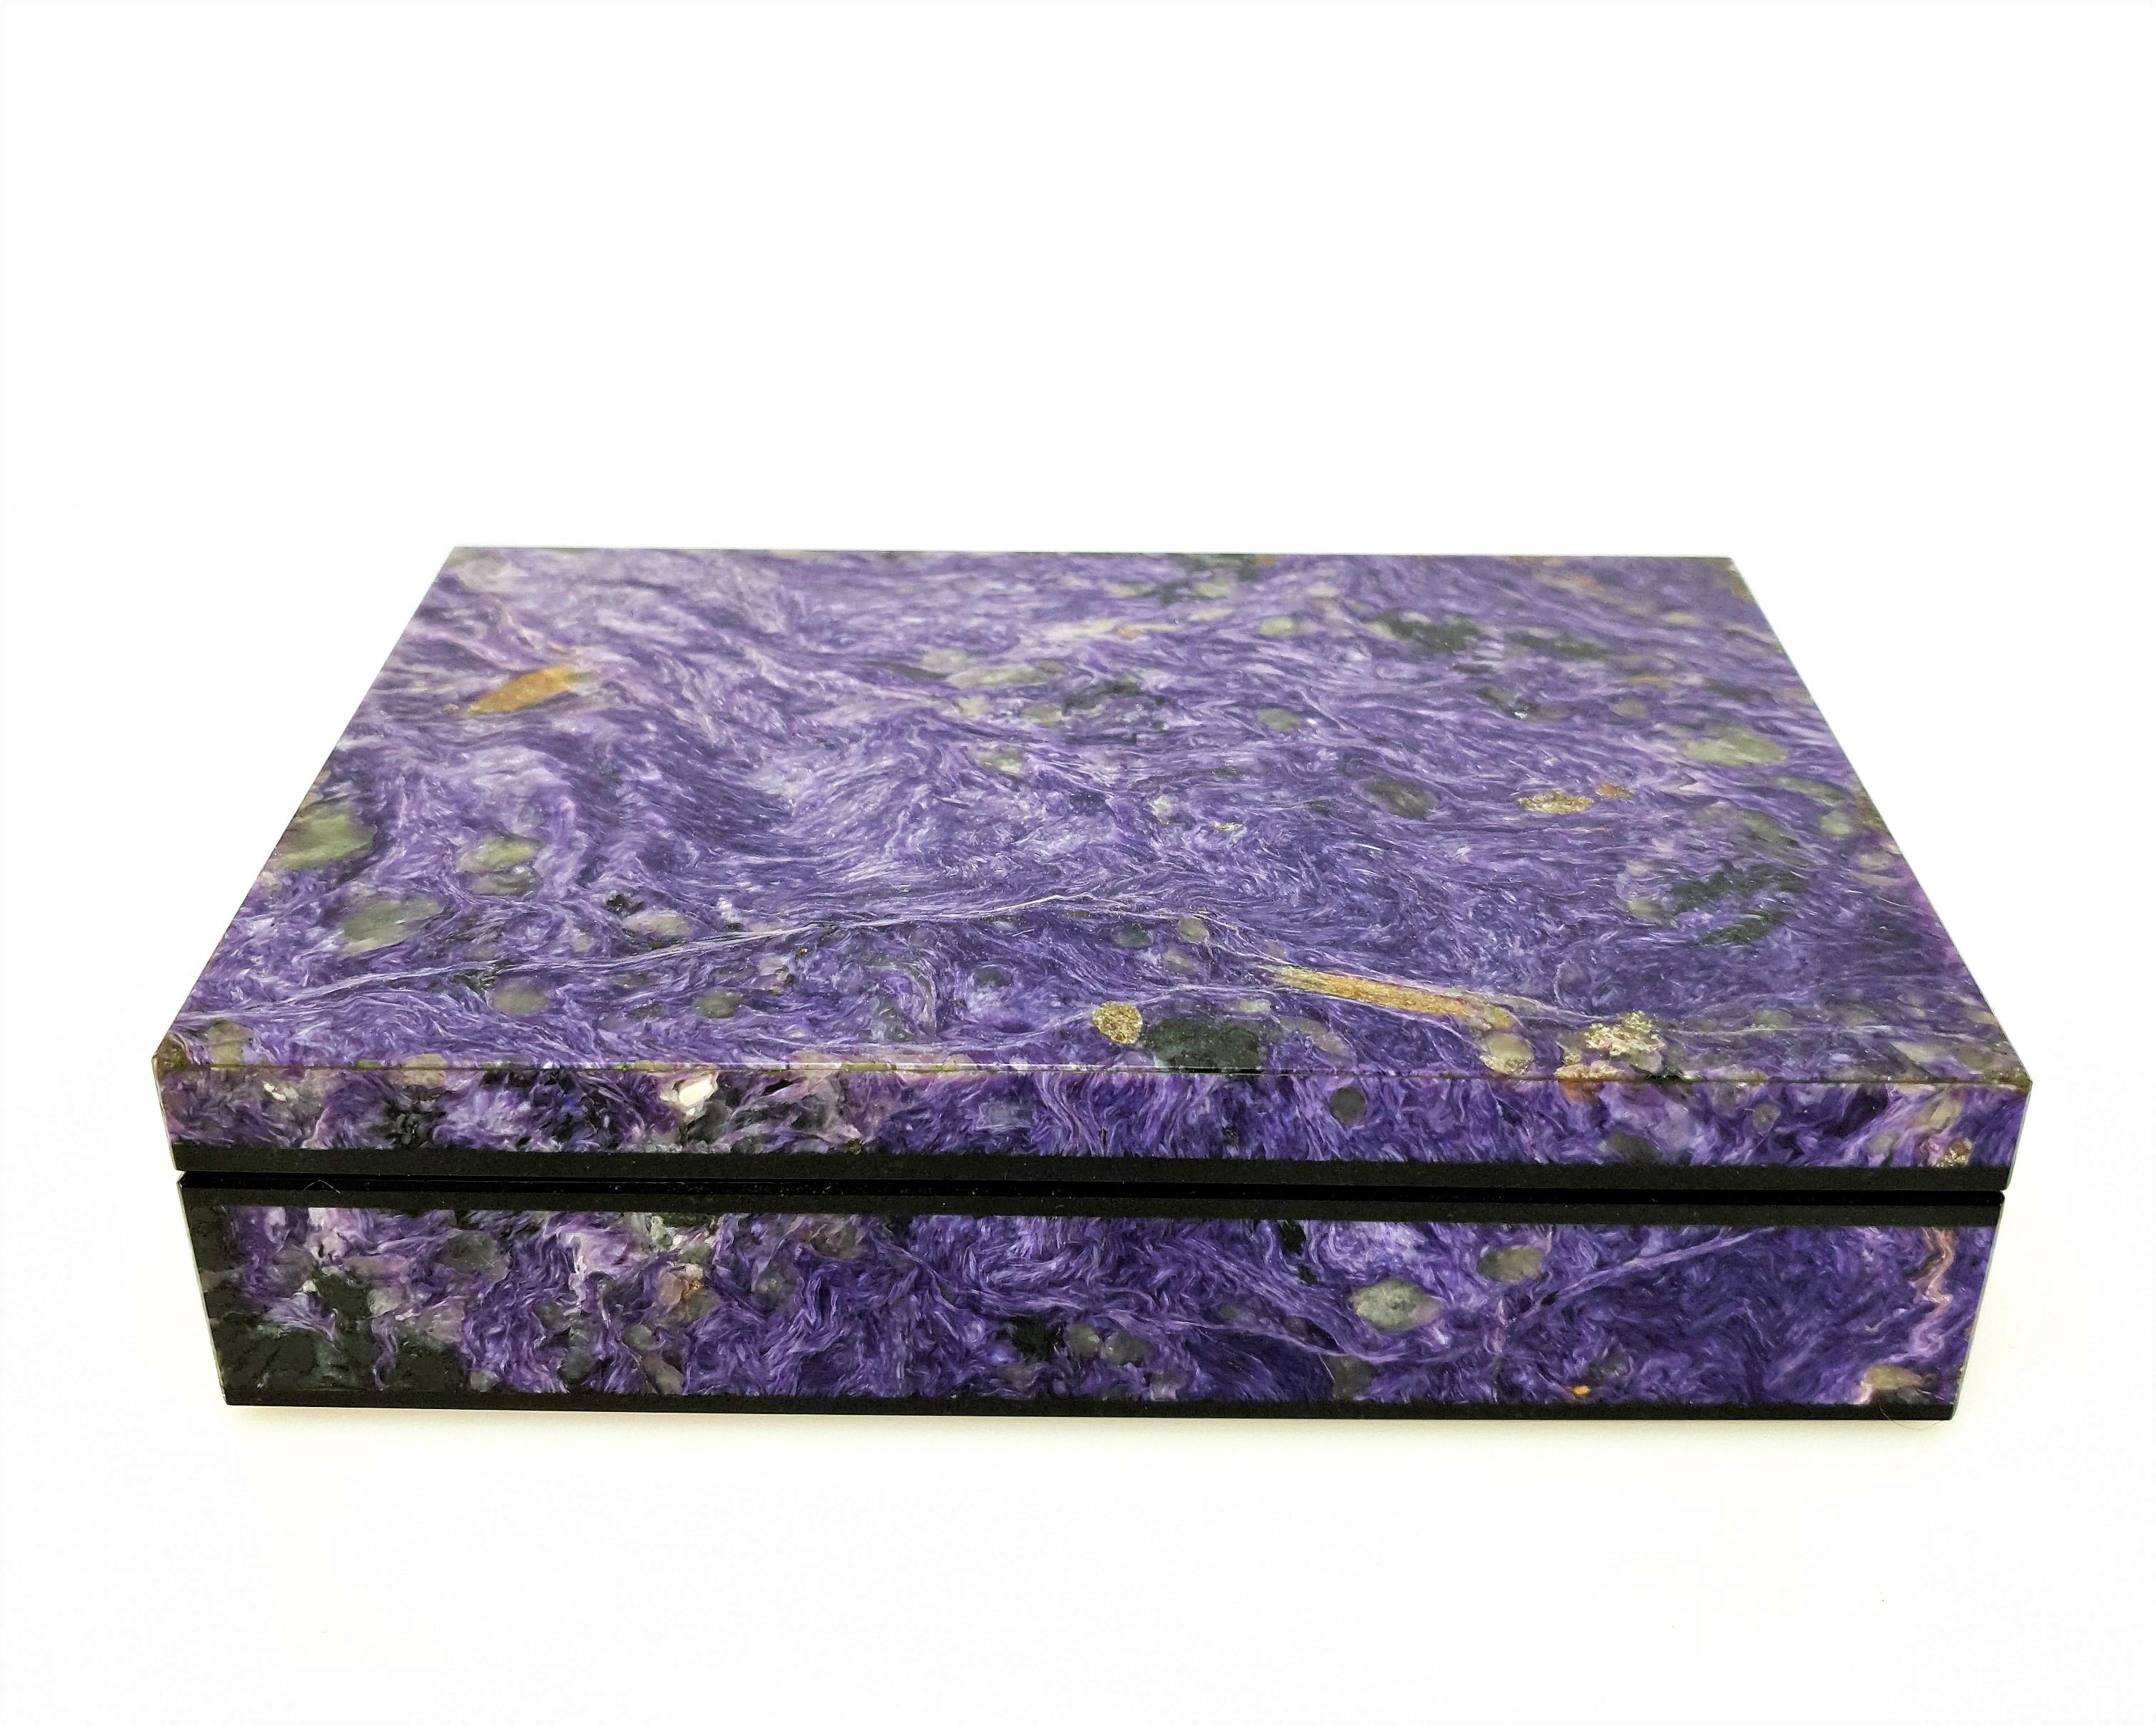 Ein handgefertigter natürlicher lila Charoit  dekoratives Schmuckkästchen.
Das Muster sieht aus wie ein kunstvolles Gemälde der Natur.
Es ist zu betonen, dass die Deckplatte aus einem Stück und nicht aus mehreren Mosaiken zusammengesetzt ist.
Das